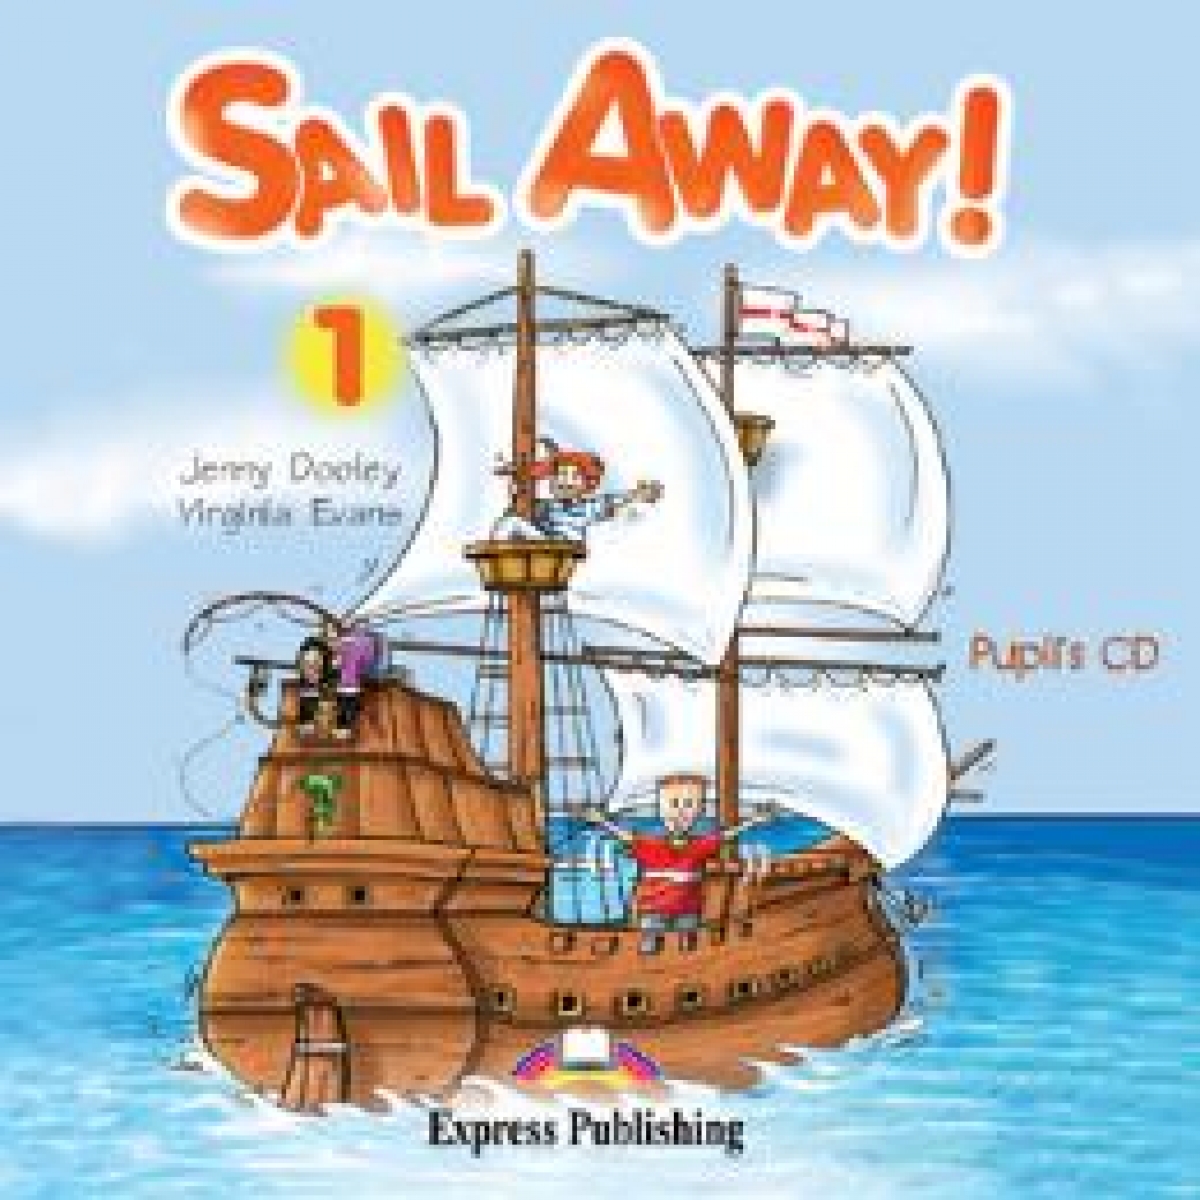 Evans Virginia, Dooley Jenny Audio CD. Sail Away! 1. Pupil's CD 